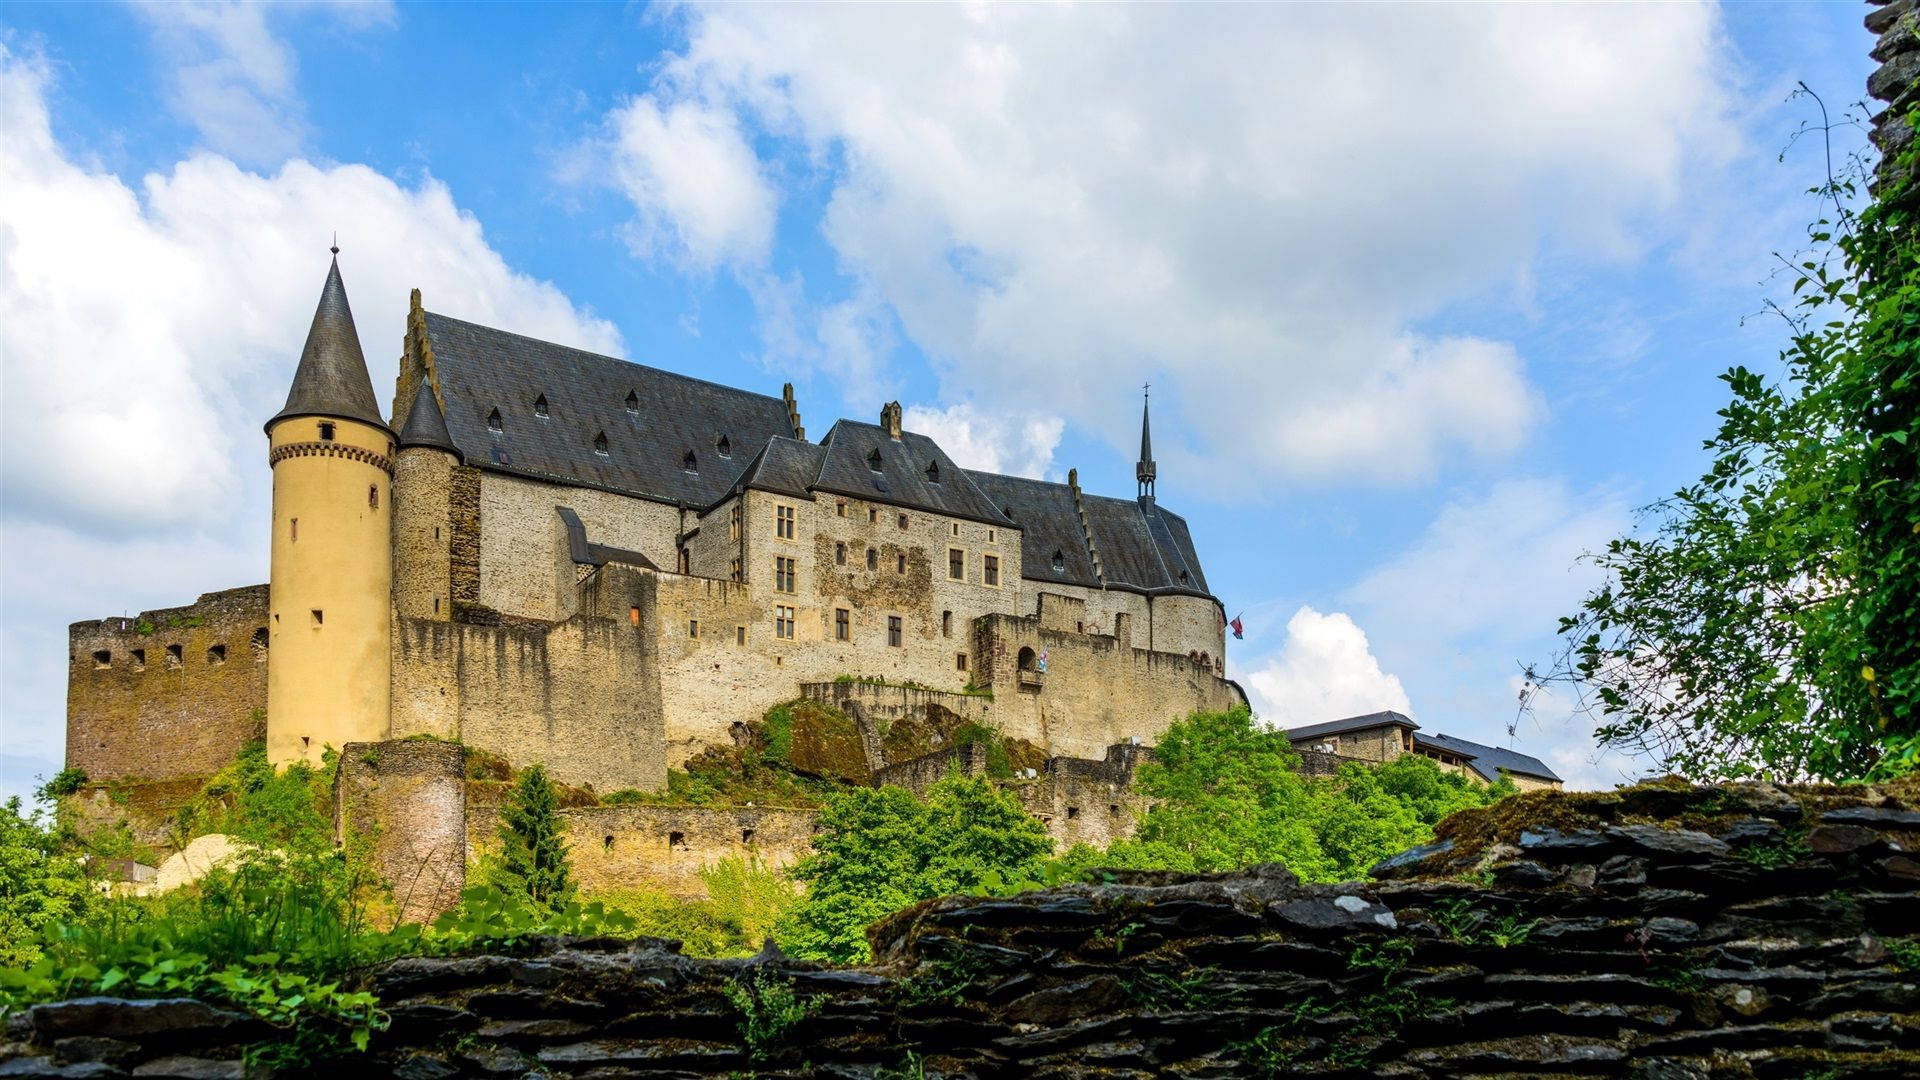 Luxembourg Vianden Castle Street View Wallpaper